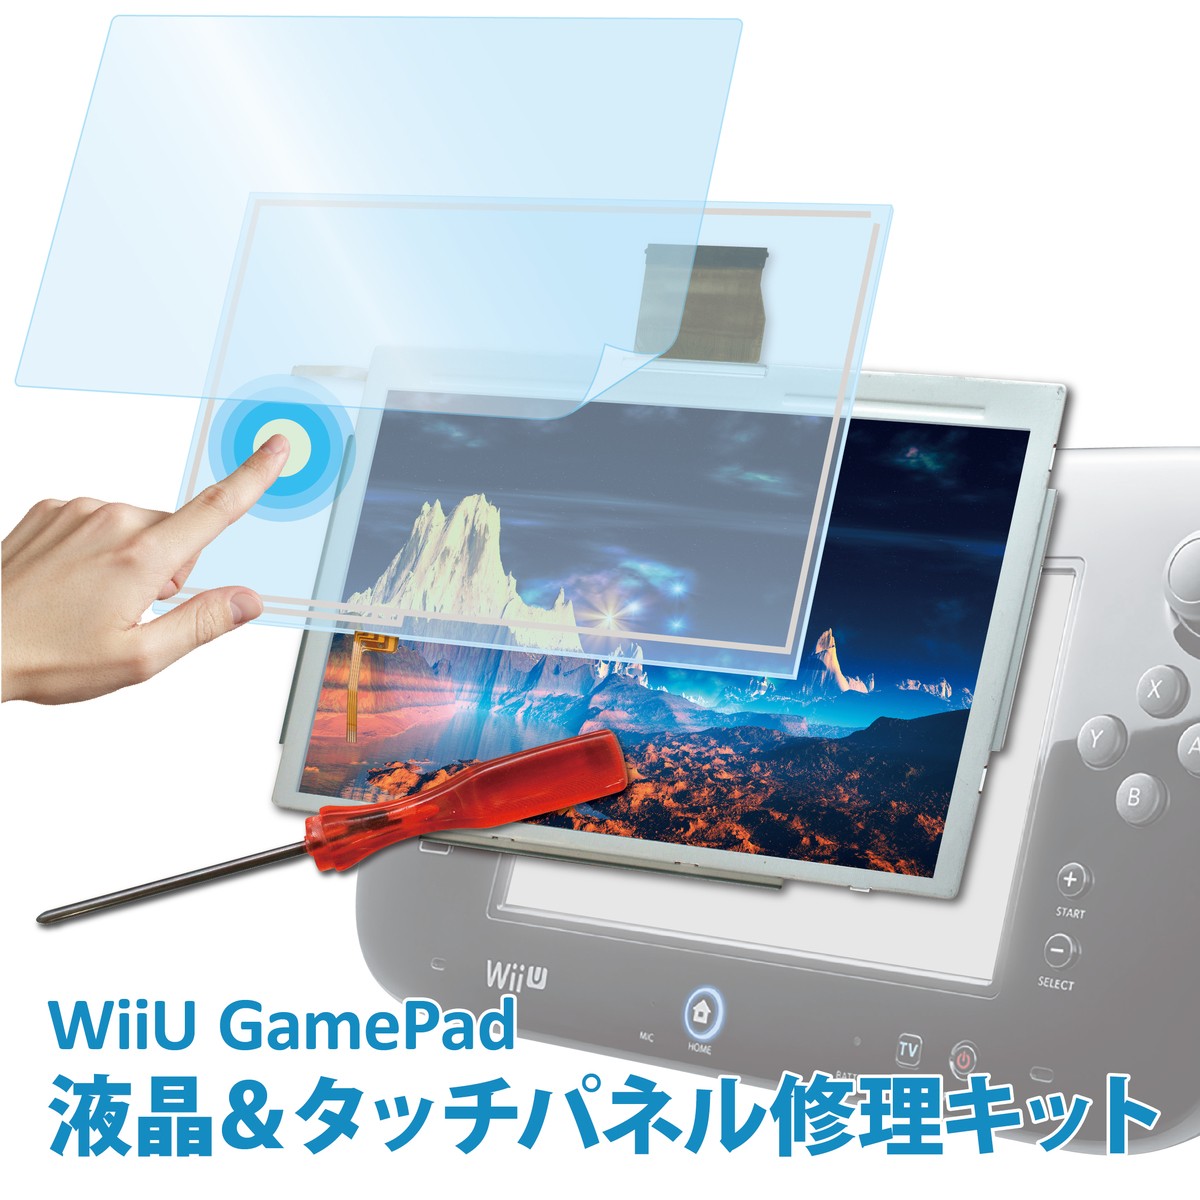 楽天市場 Wiiu ゲームパッド 交換修理キット 液晶パネル タッチパネル 液晶保護フィルム 専用ドライバー 製品保証付 C Wiiu４点 Apマーケット